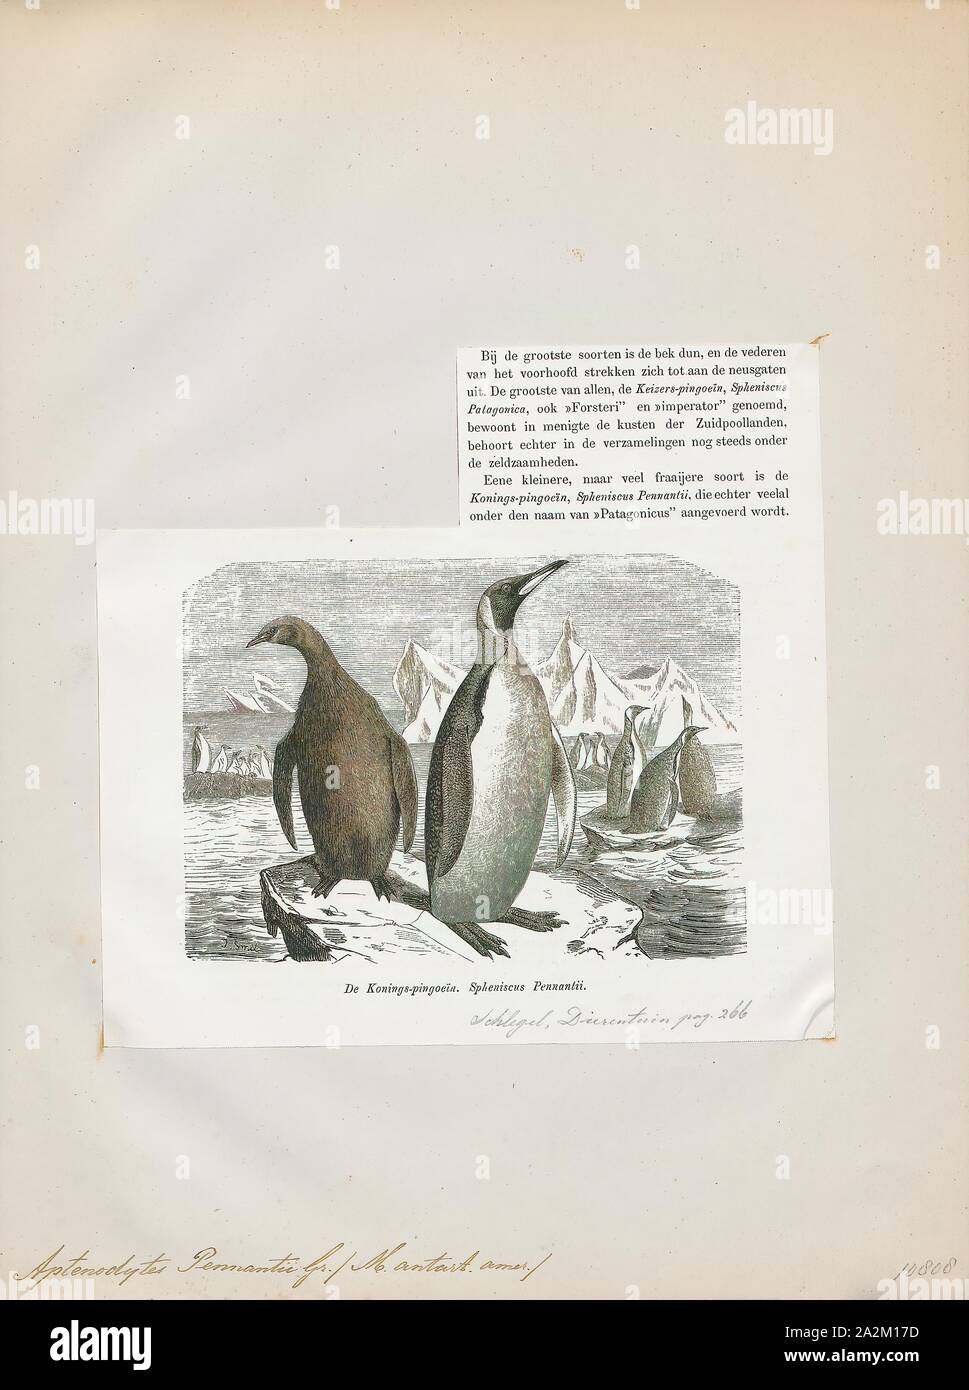 Pennantii Aptenodytes, Ausdrucken, die Gattung Aptenodytes enthält zwei bestehenden Arten der Pinguine gemeinsam bekannt als "der große Pinguine., 1872 Stockfoto